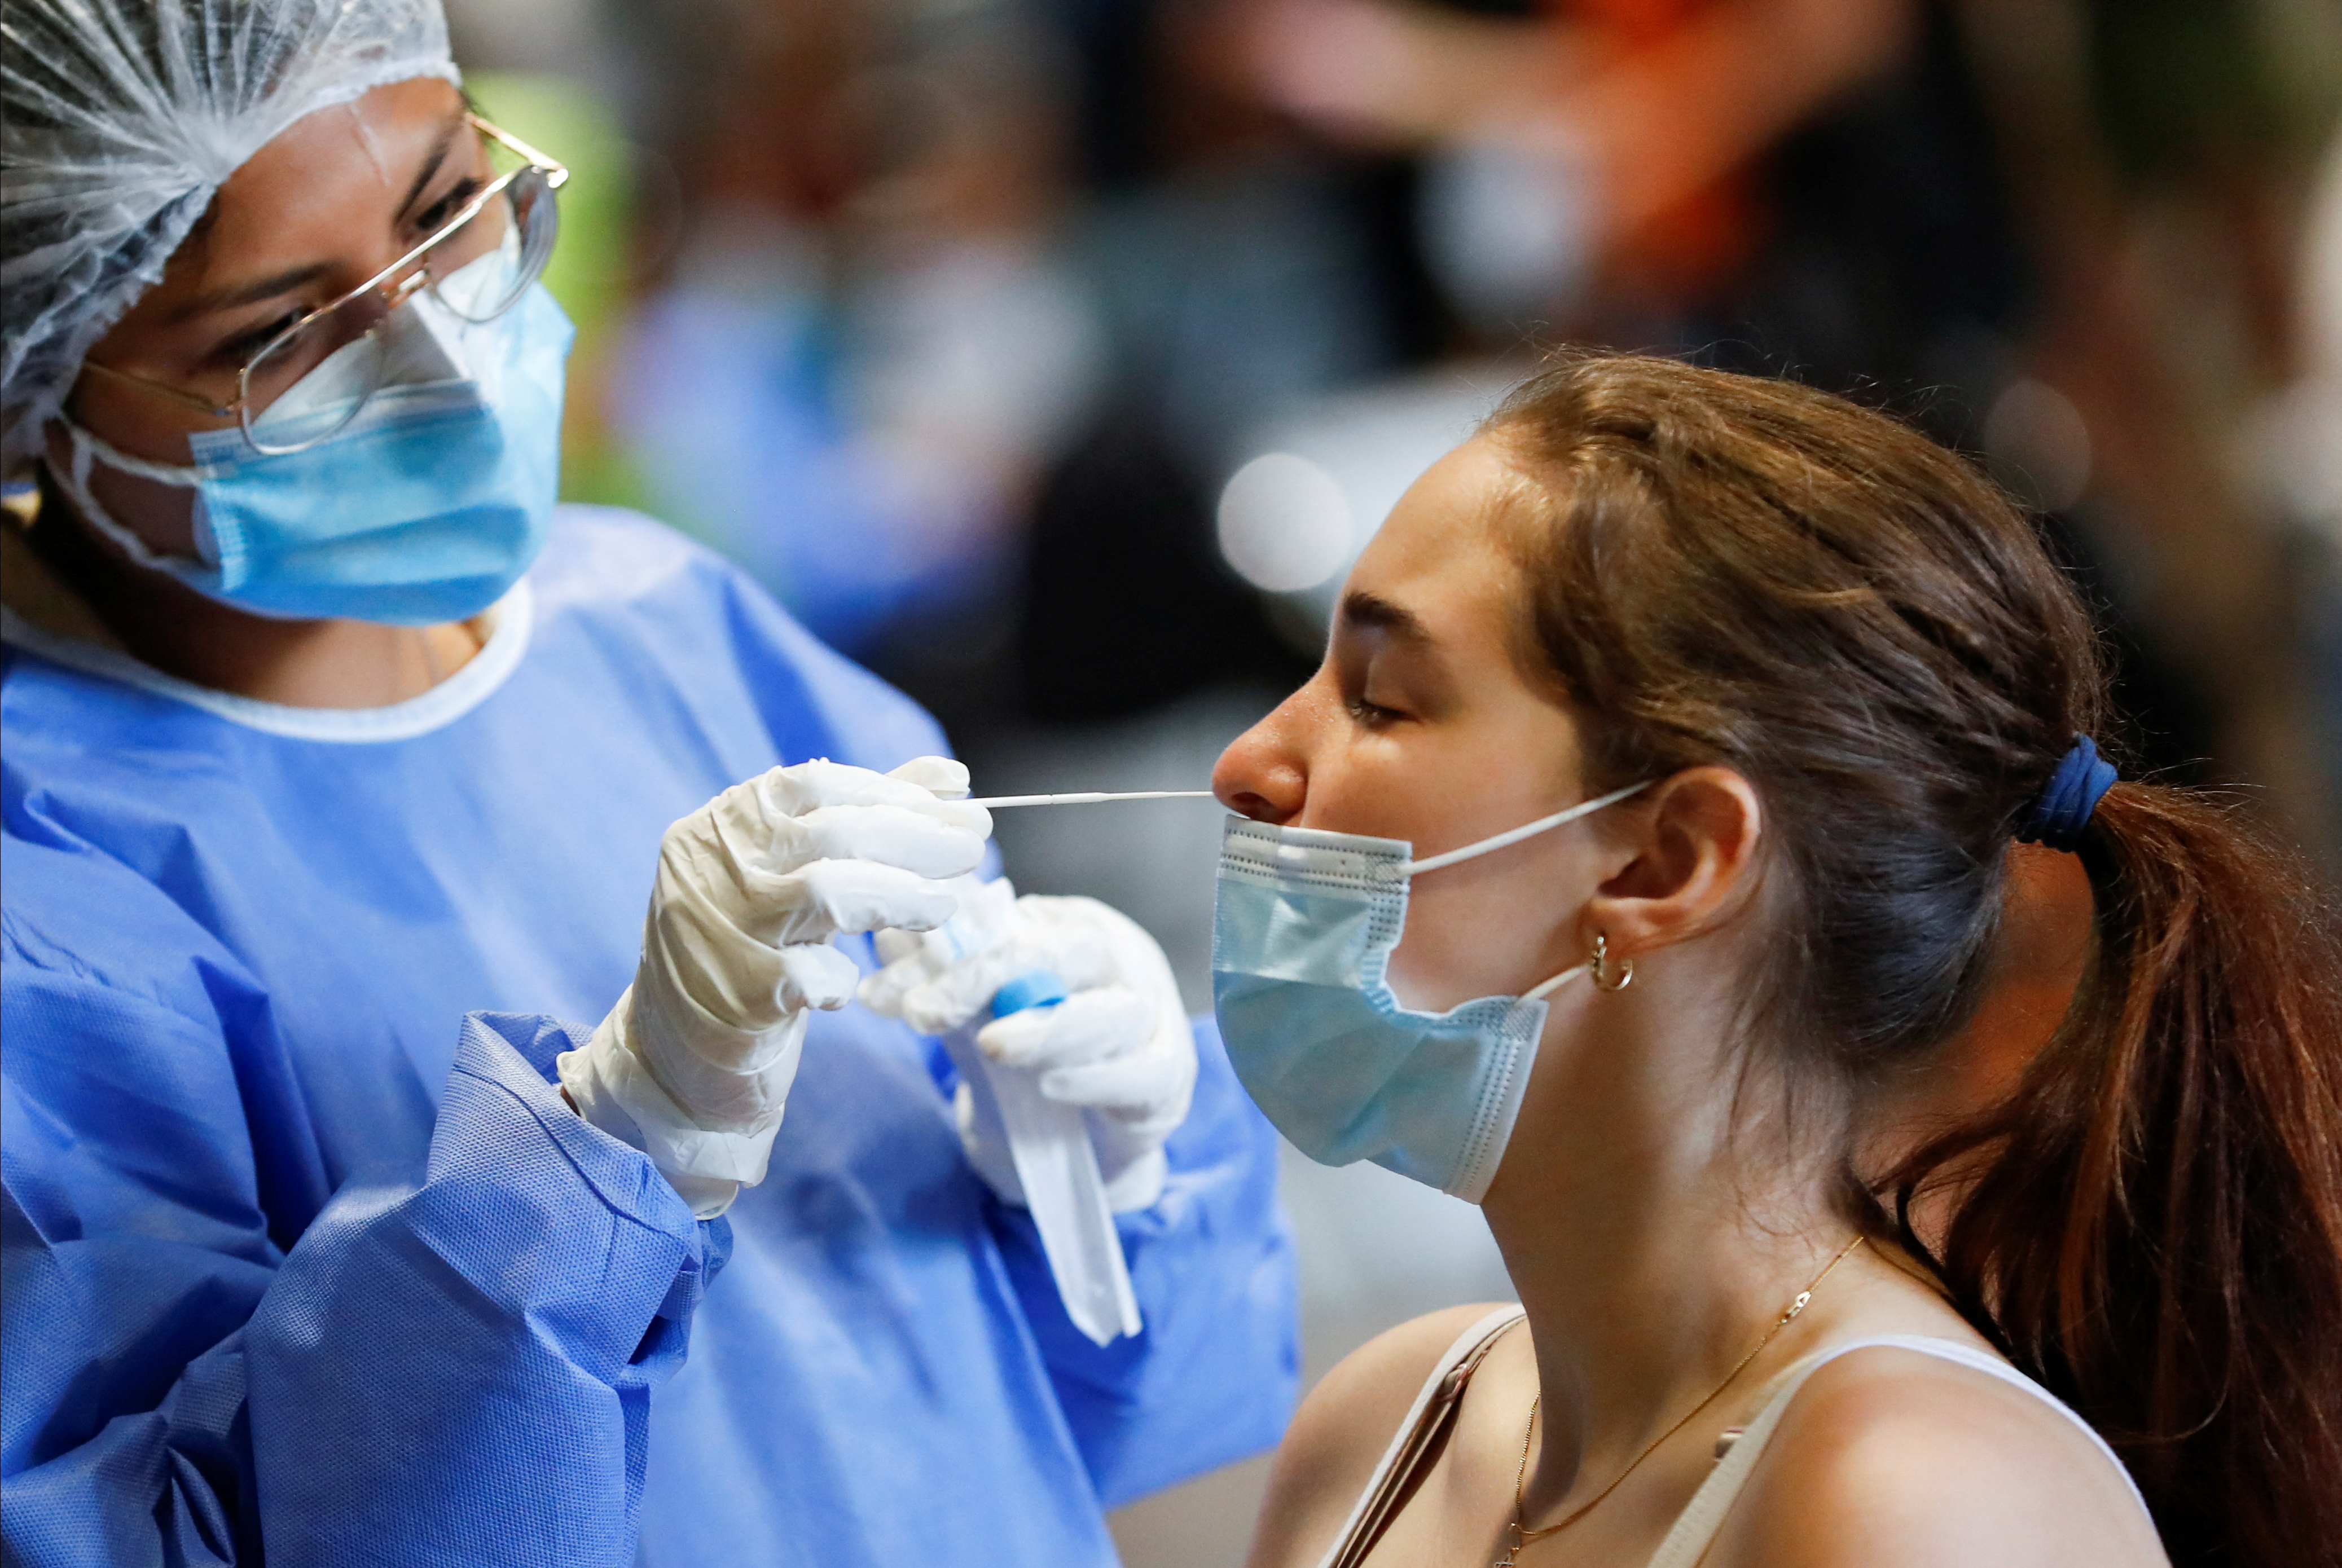 L'augmentation des infections se poursuit, selon le rapport COVID ce dimanche / REUTERS/Agustin Marcarian